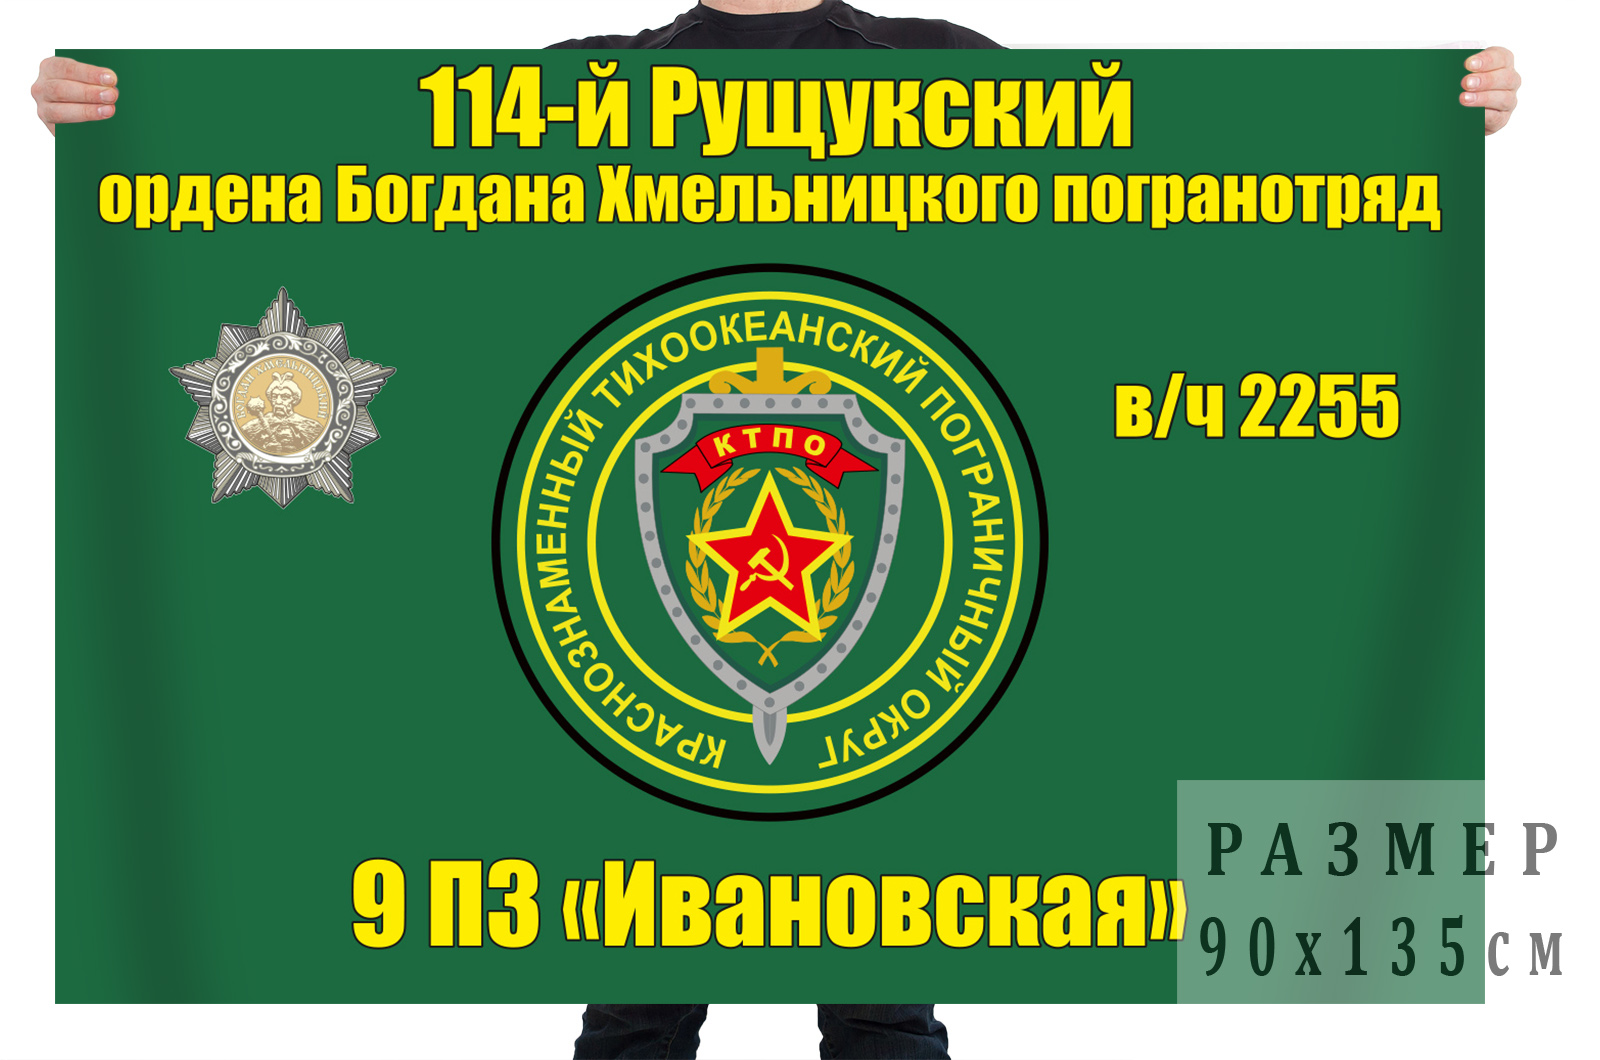 114 Рущукский ордена Богдана Хмельницкого 2 степени пограничный отряд